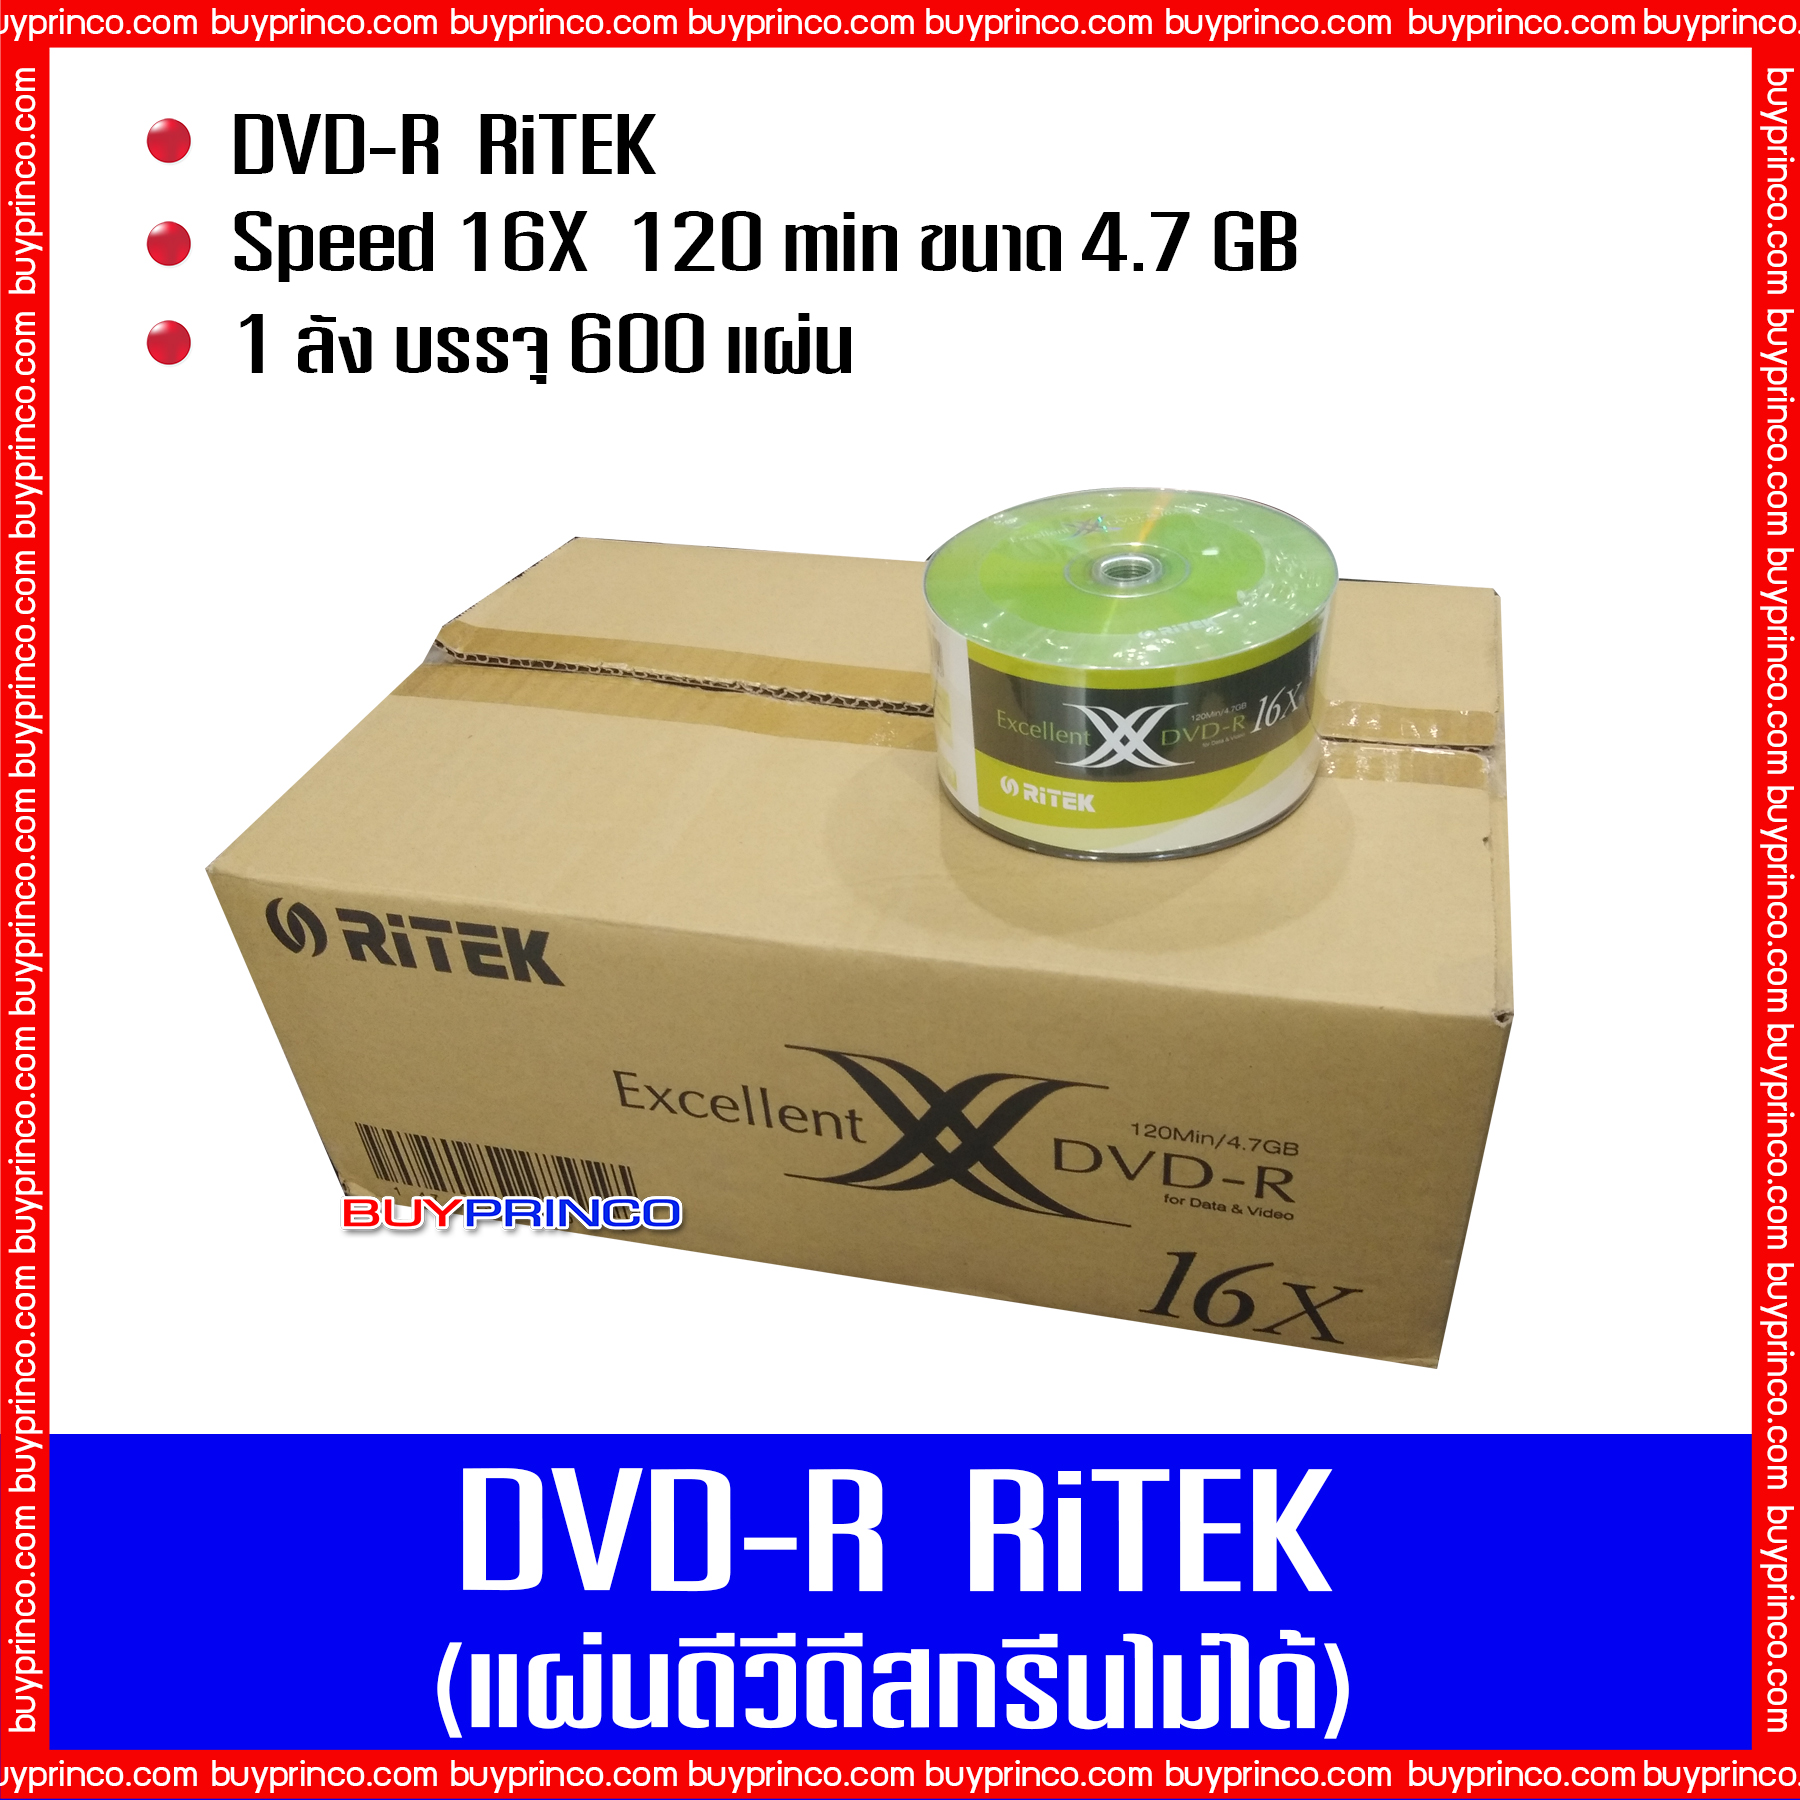 แผ่นดีวีดี ไรเทค DVD R Ritek (แผ่นดีวีดีสกรีนไม่ได้) ยกลัง